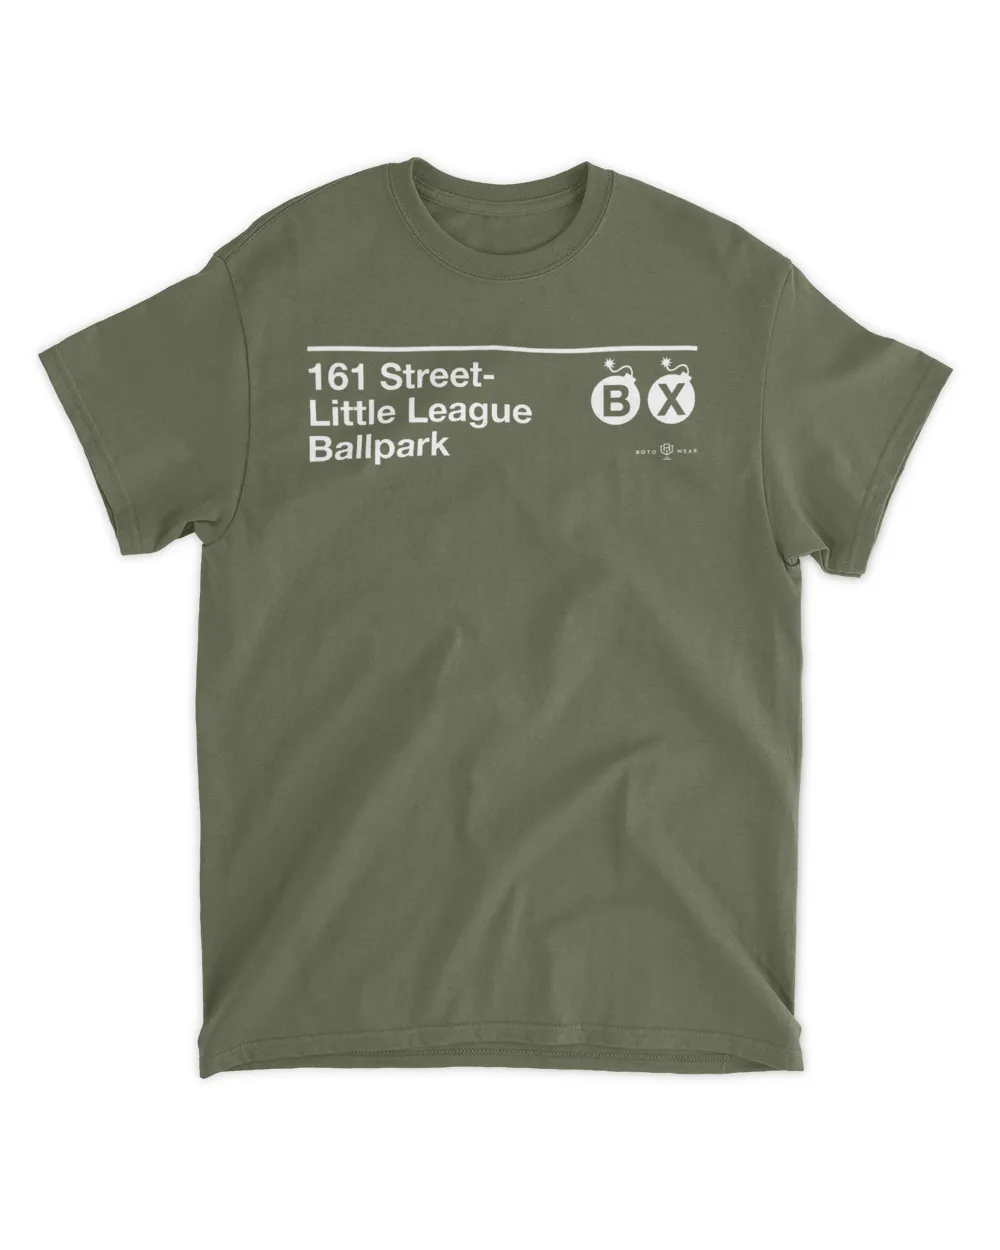 161 Street Little League Ballpark Shirt